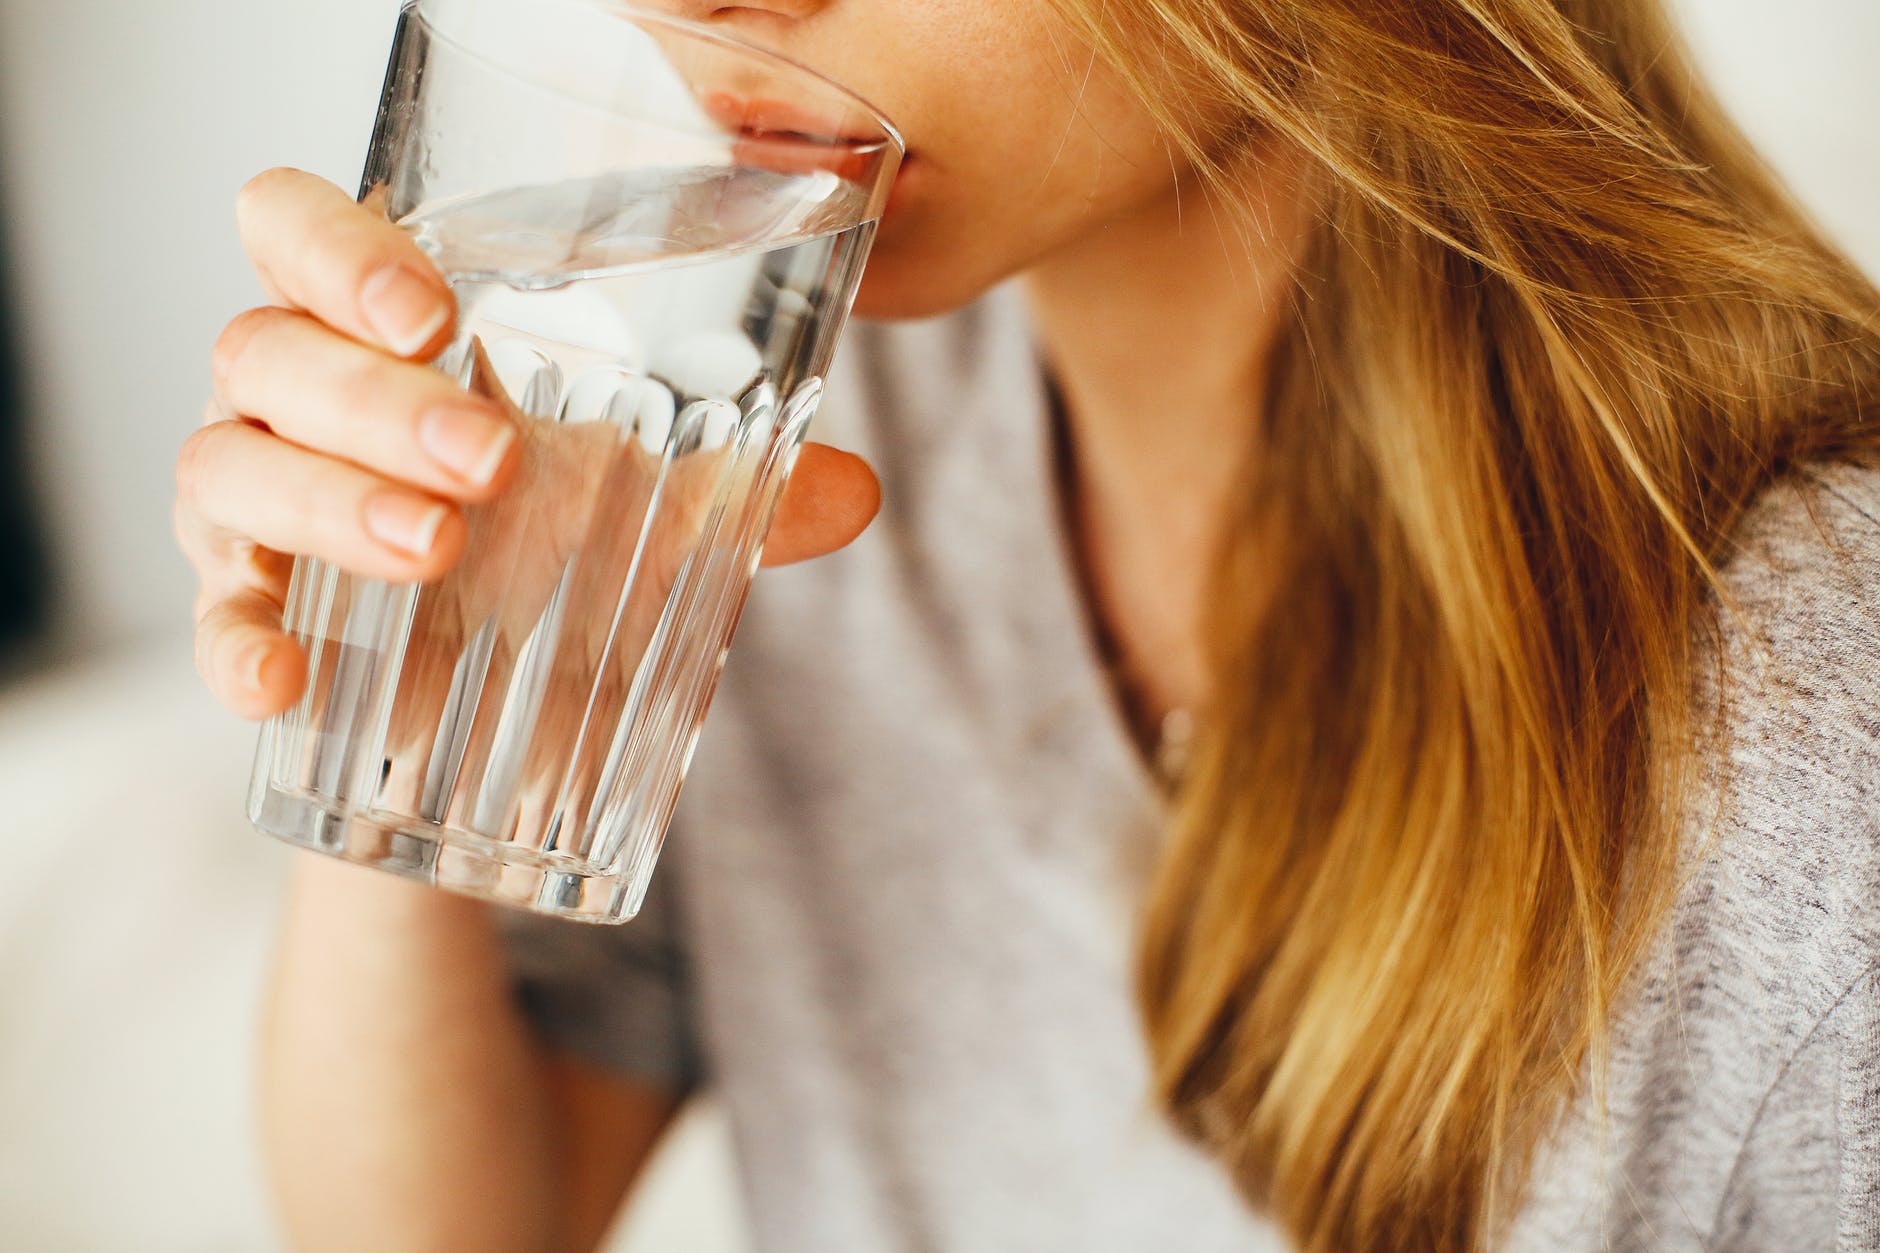 Dieta cu apă te pate ajuta să pierzi până la 9 kilograme în 3 săptămâni